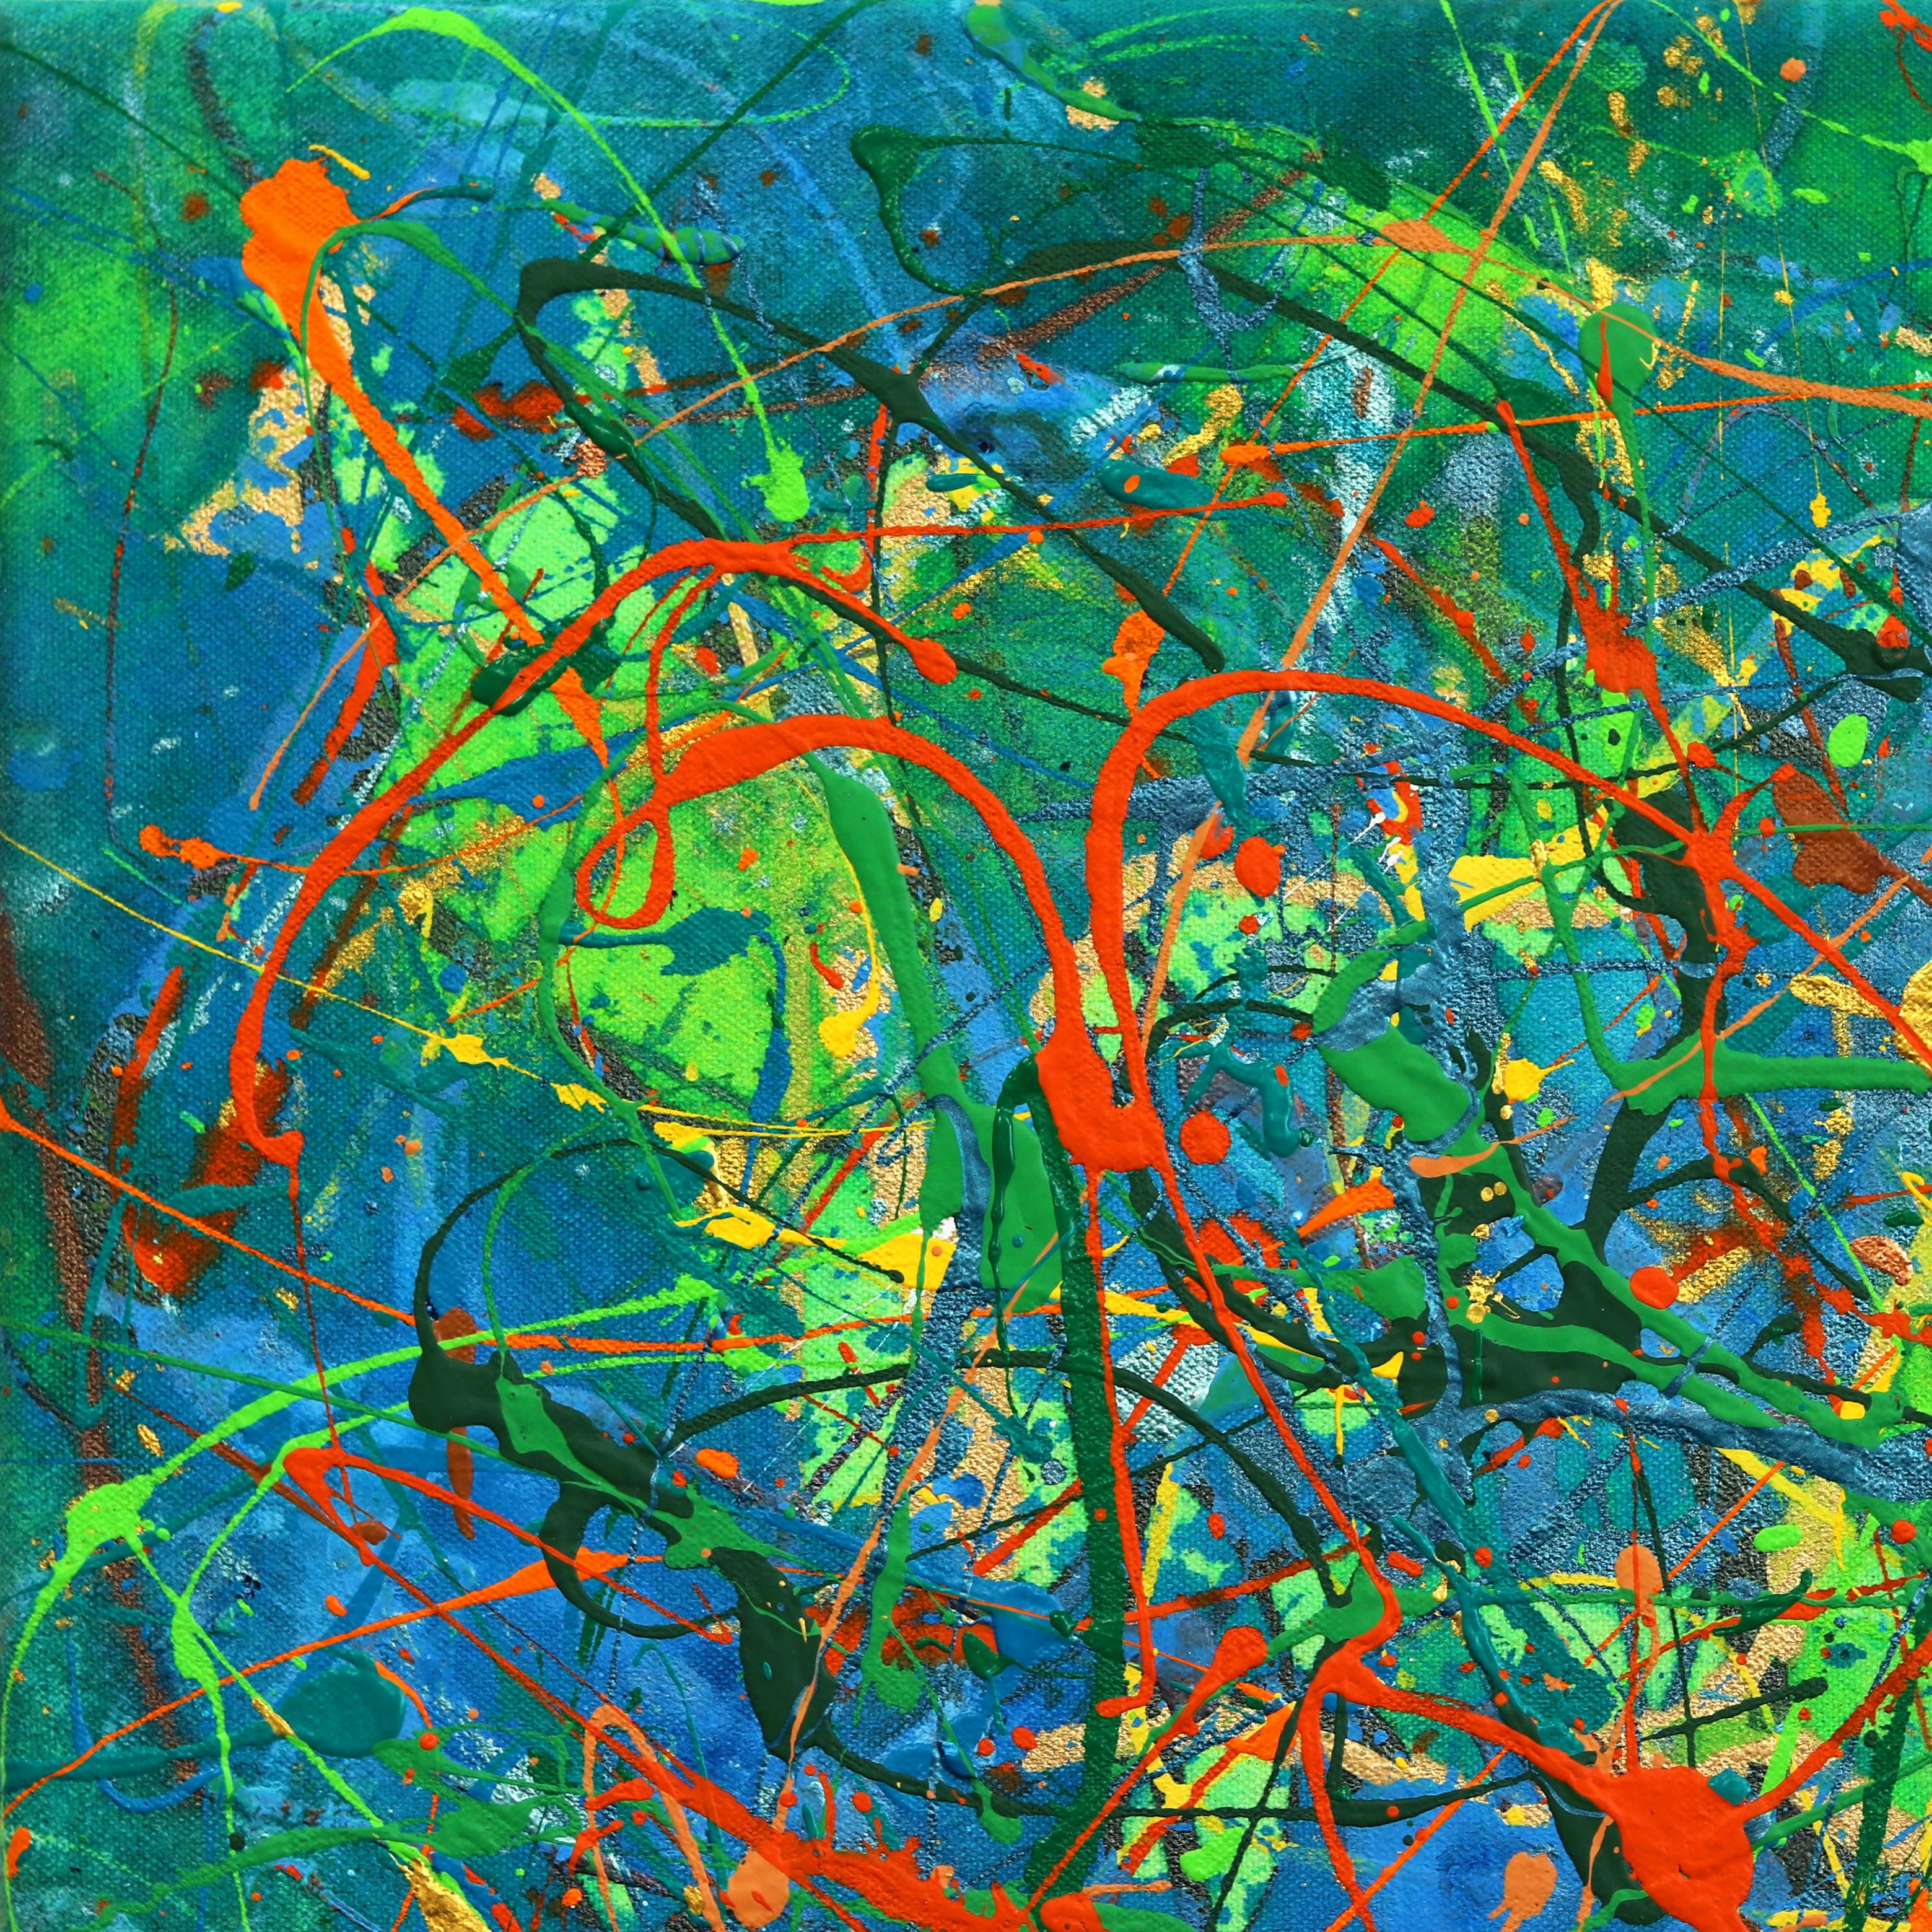 L'artiste de Los Angeles Marc Raphael séduit par ses peintures influencées par le mouvement expressionniste abstrait de New York. Après avoir découvert l'œuvre de Jackson Pollock pour la première fois dans les années 90, Raphael a été séduit par